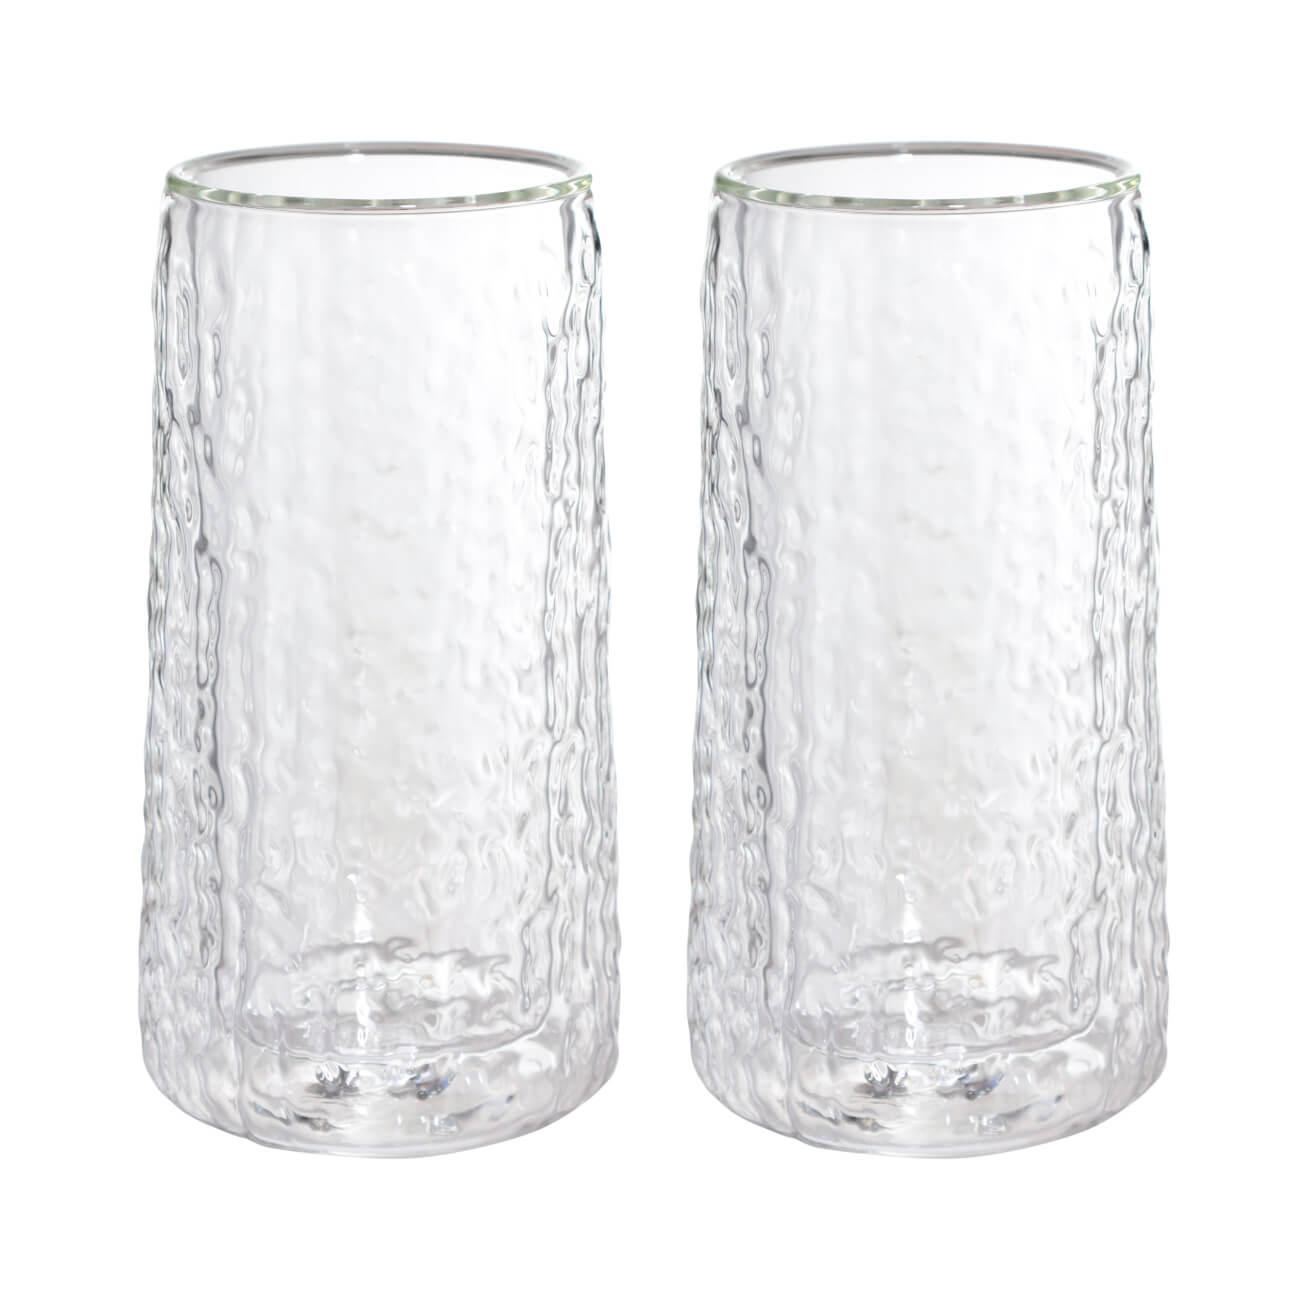 Стакан, 320 мл, 2 шт, стекло Б, Air ripply бокал для вина 400 мл 2 шт стекло перламутр ripply polar